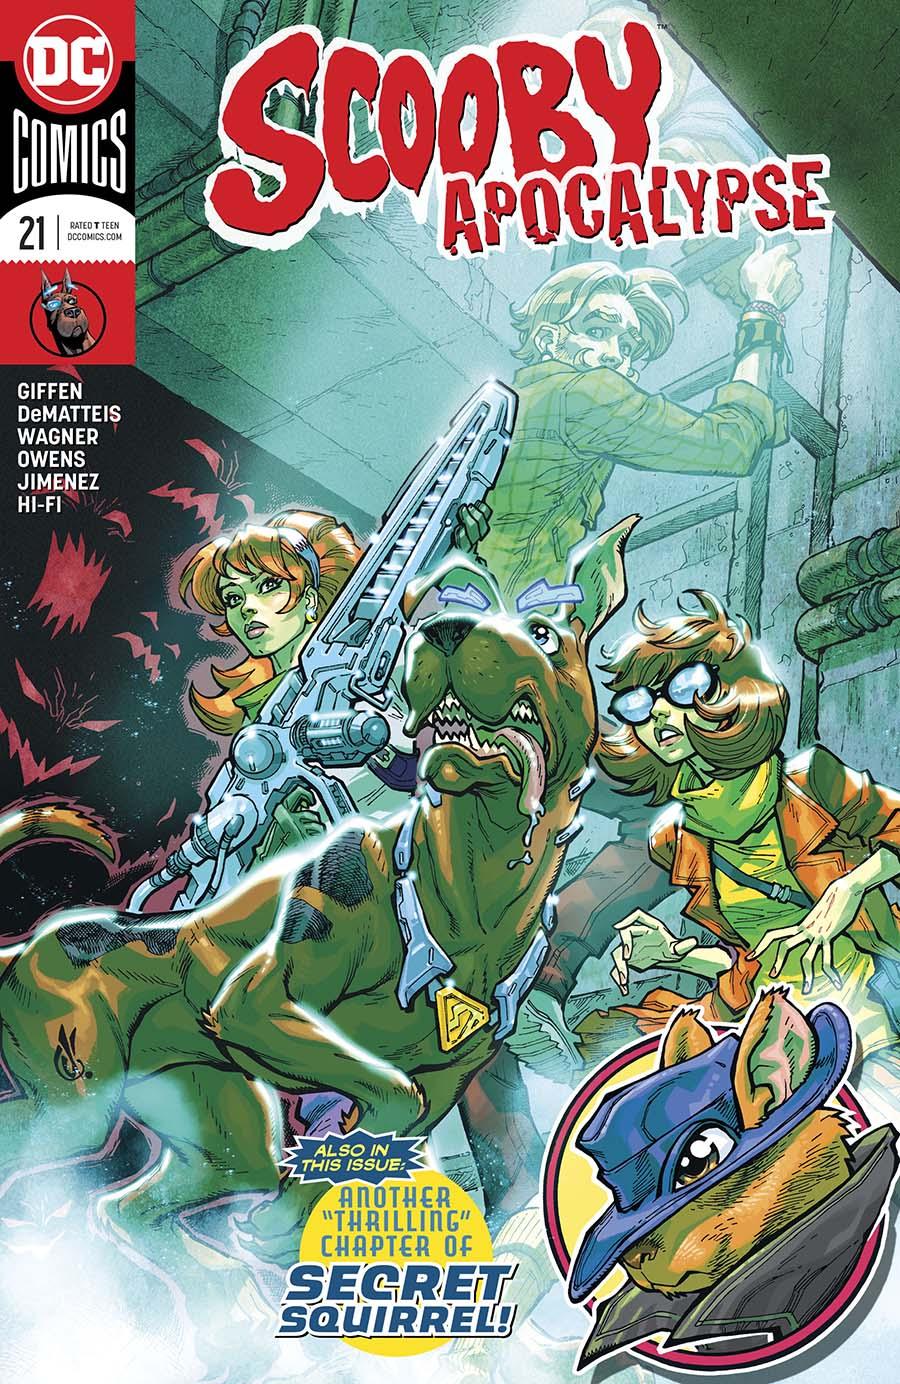 Scooby Apocalypse Vol. 1 #21